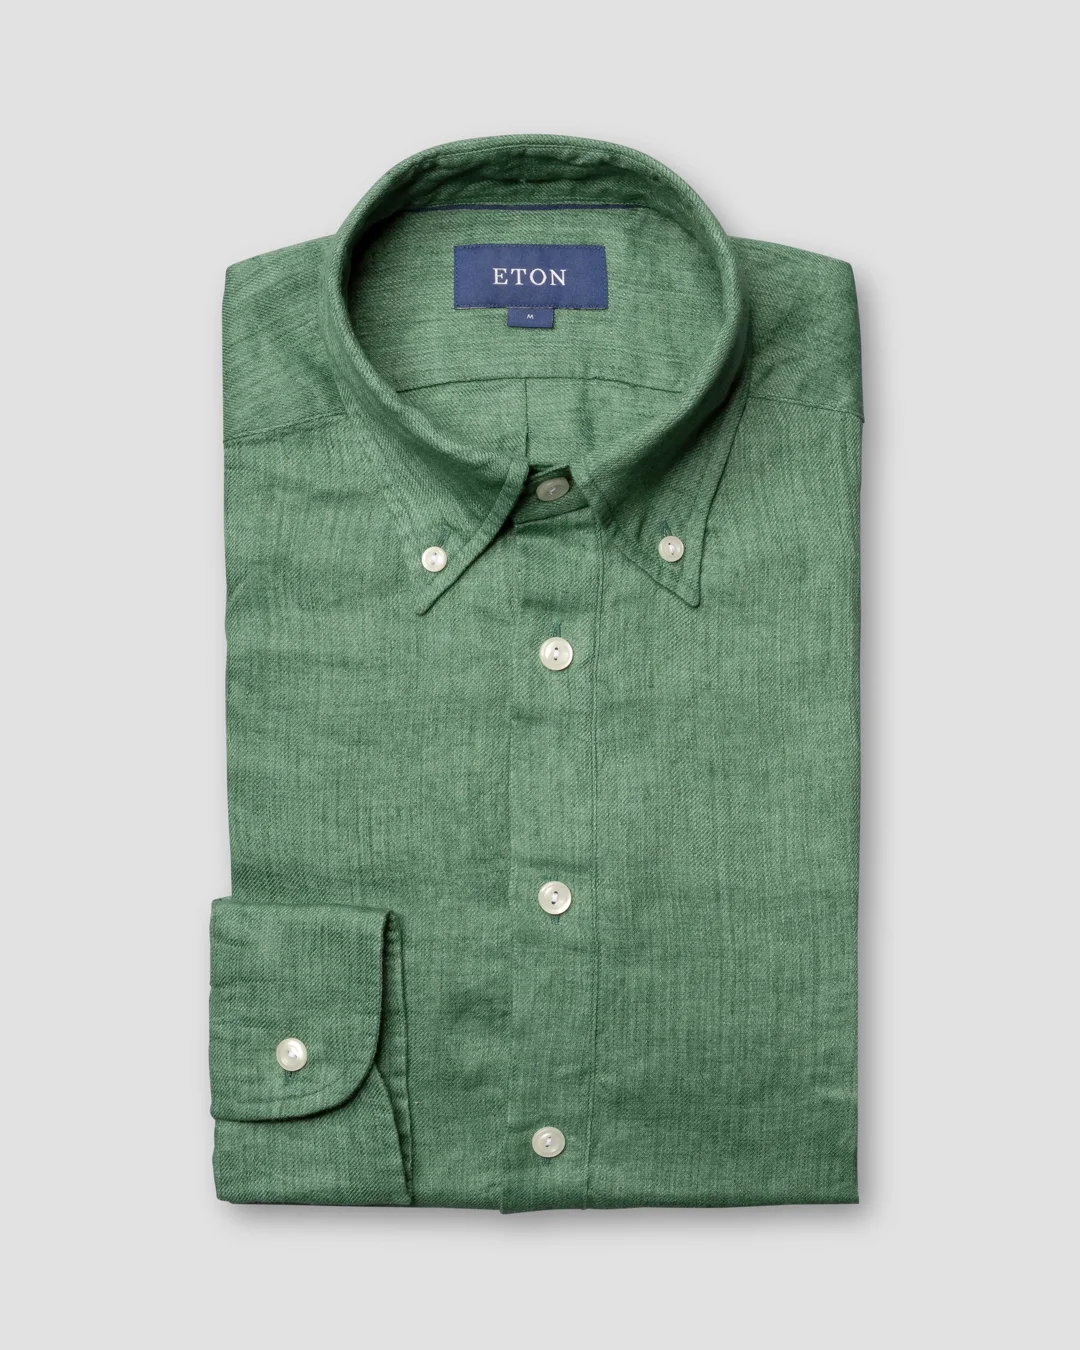 Green luxe linen popover shirt - Eton